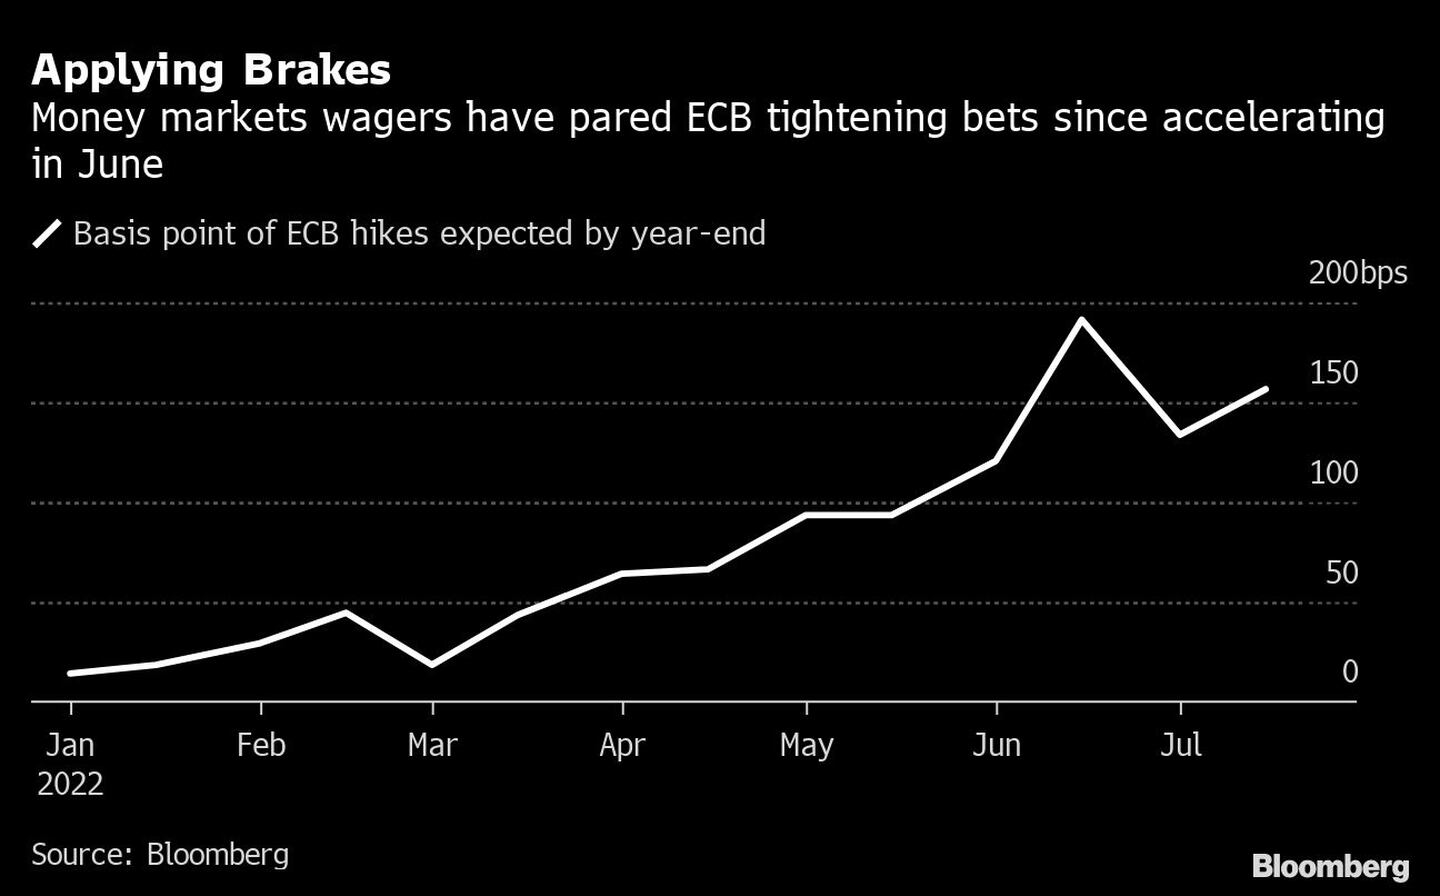 Las proyecciones de los mercados monetarios han recortado las apuestas de endurecimiento del BCE desde que se aceleraron en juniodfd